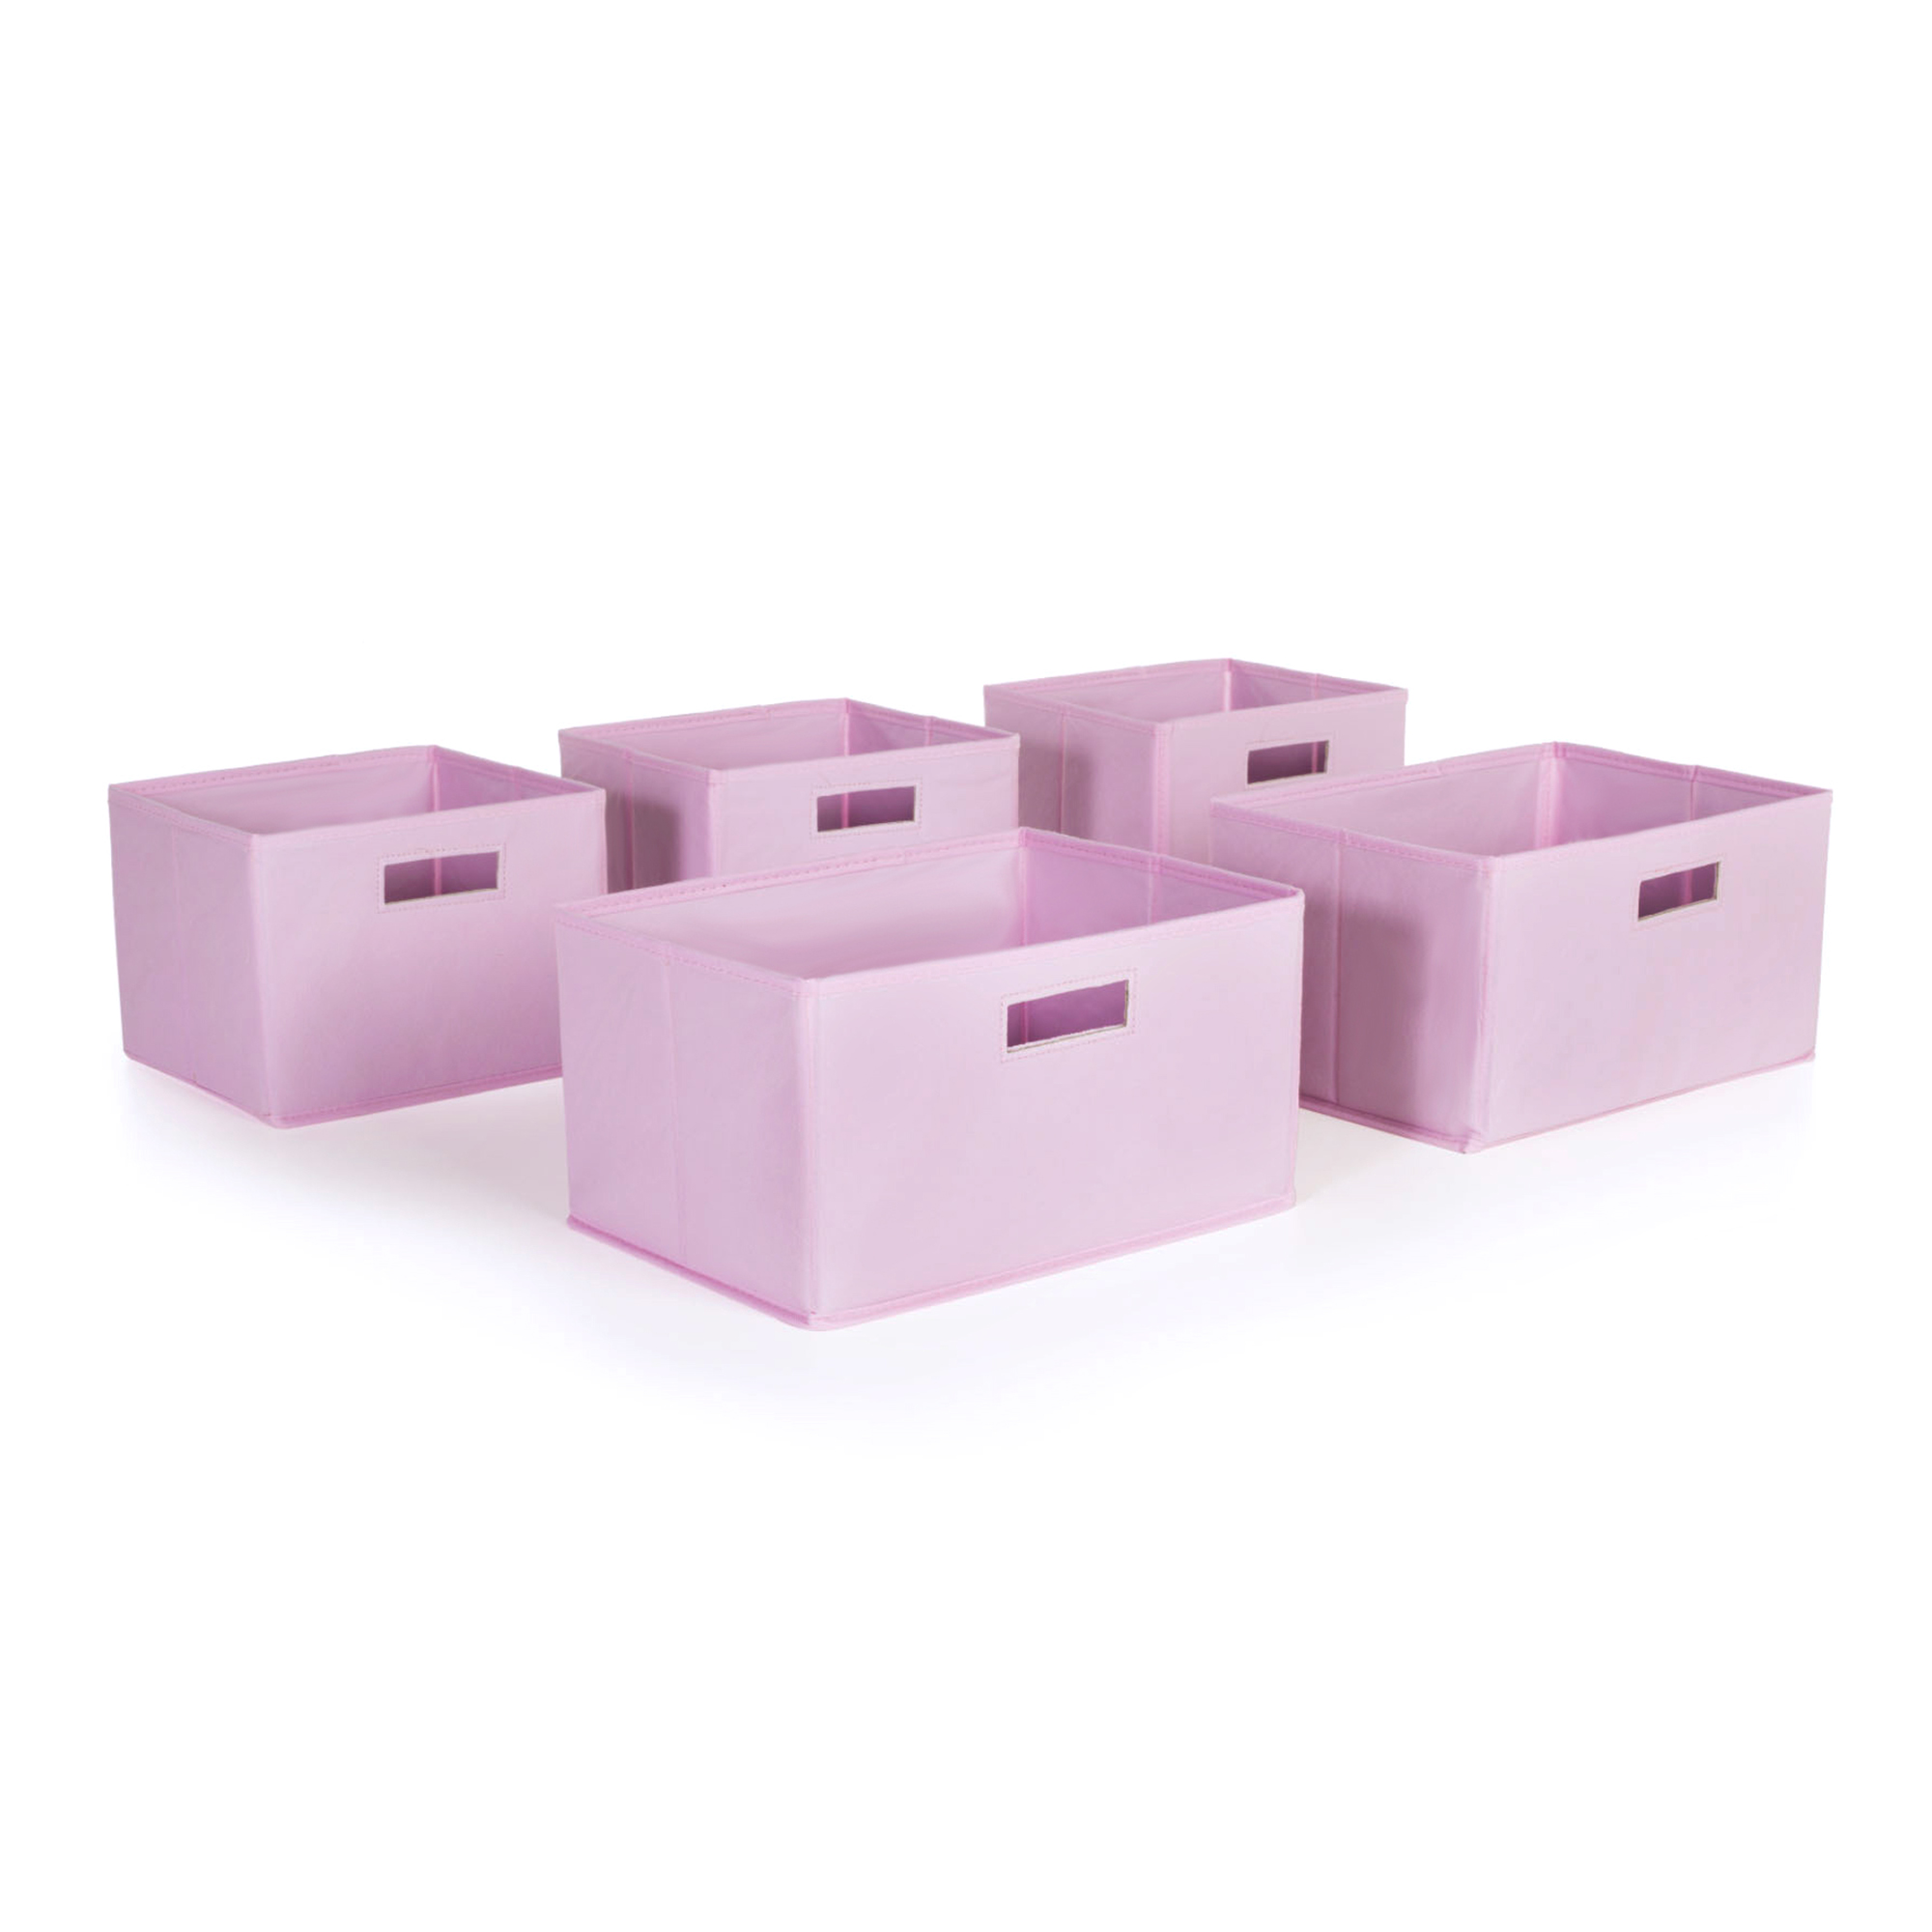 Pink Storage Bins - Set of 5 - image 1 of 2